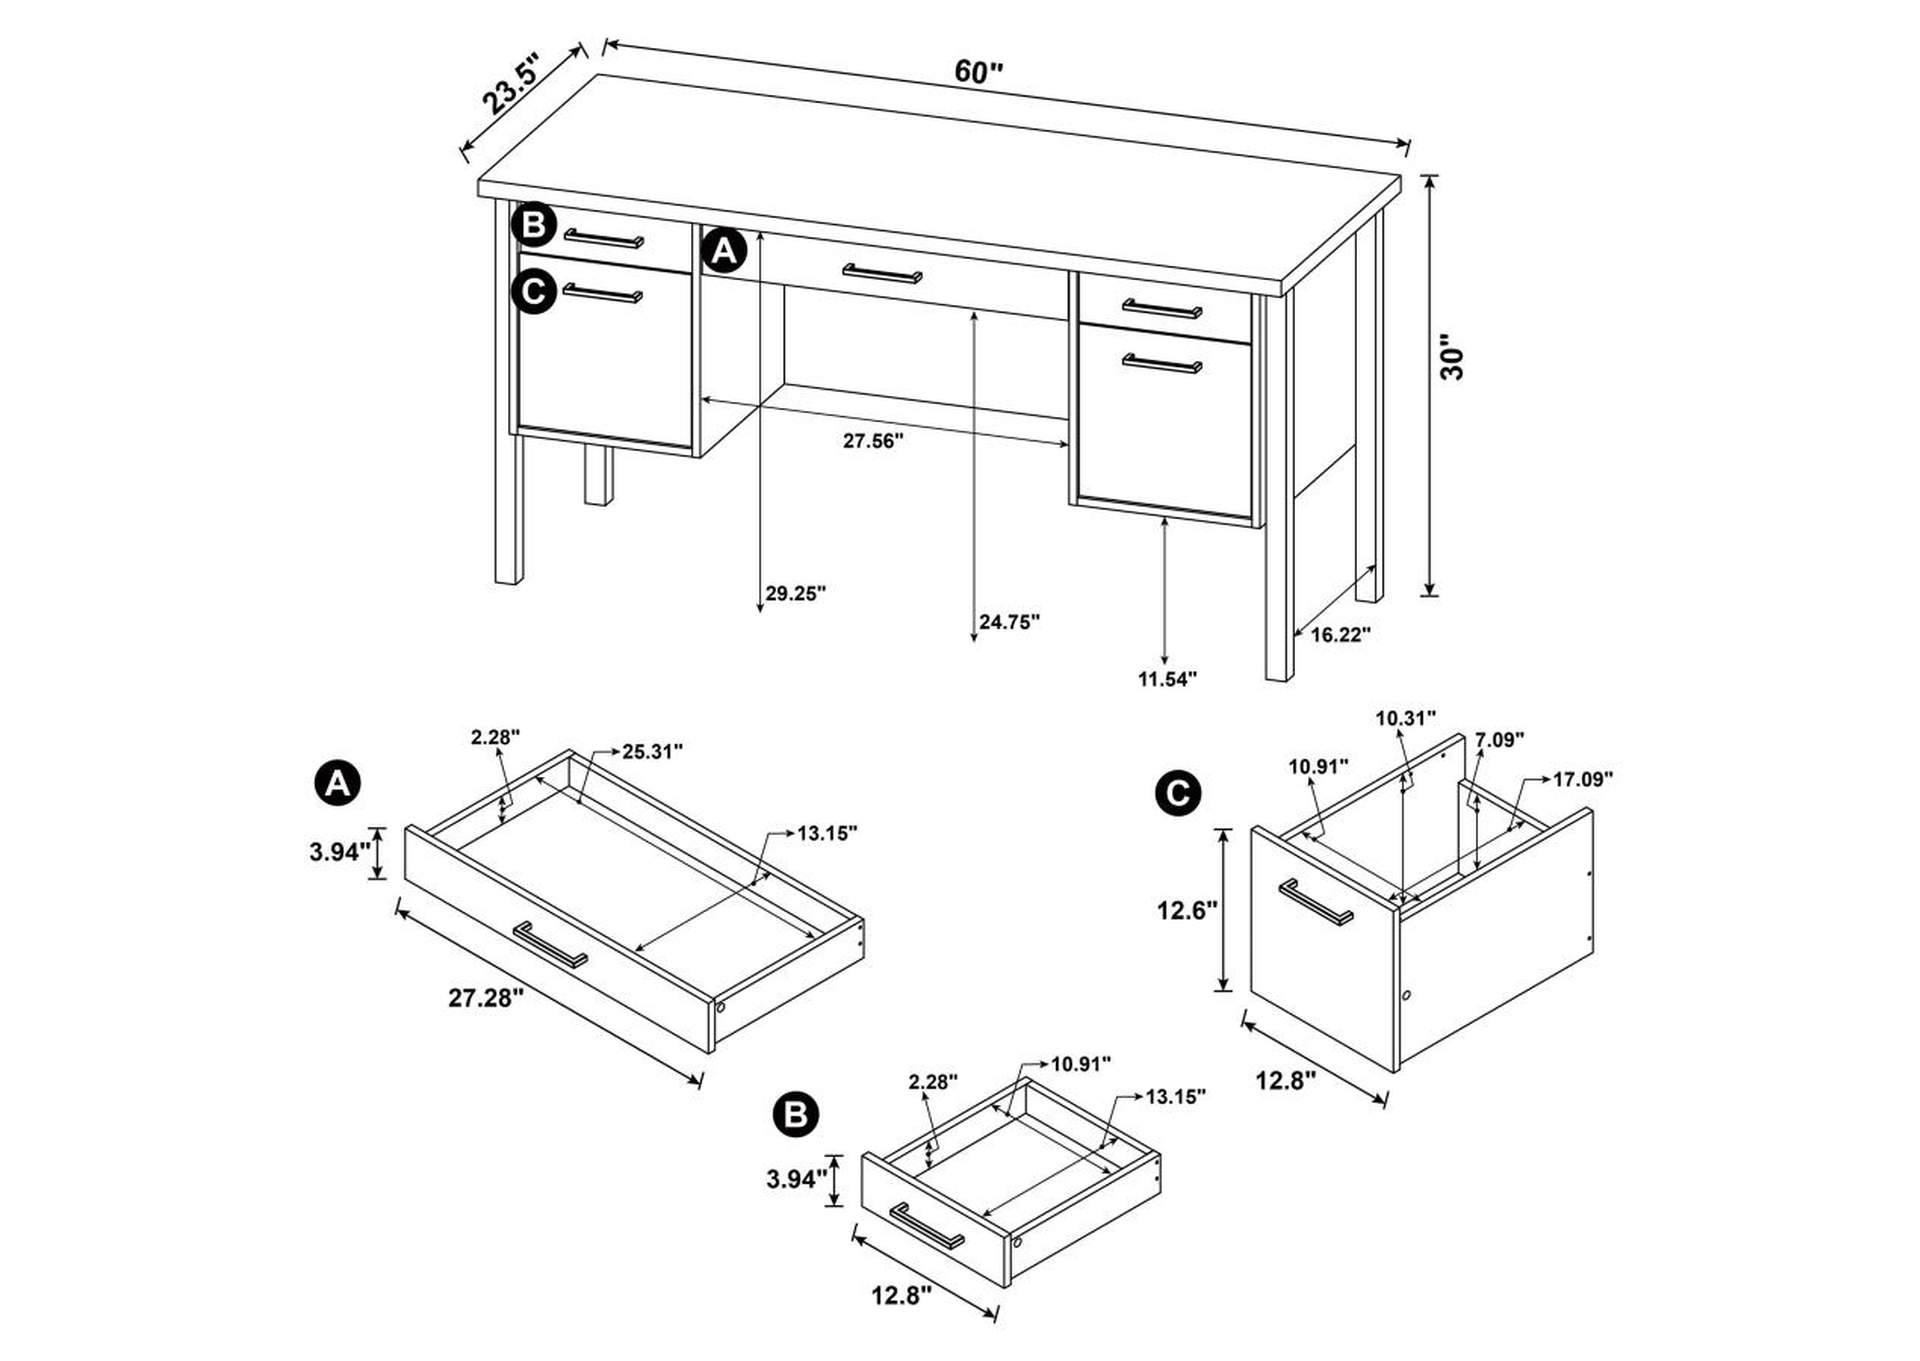 Samson 4 - drawer Office Desk Weathered Oak,Coaster Furniture